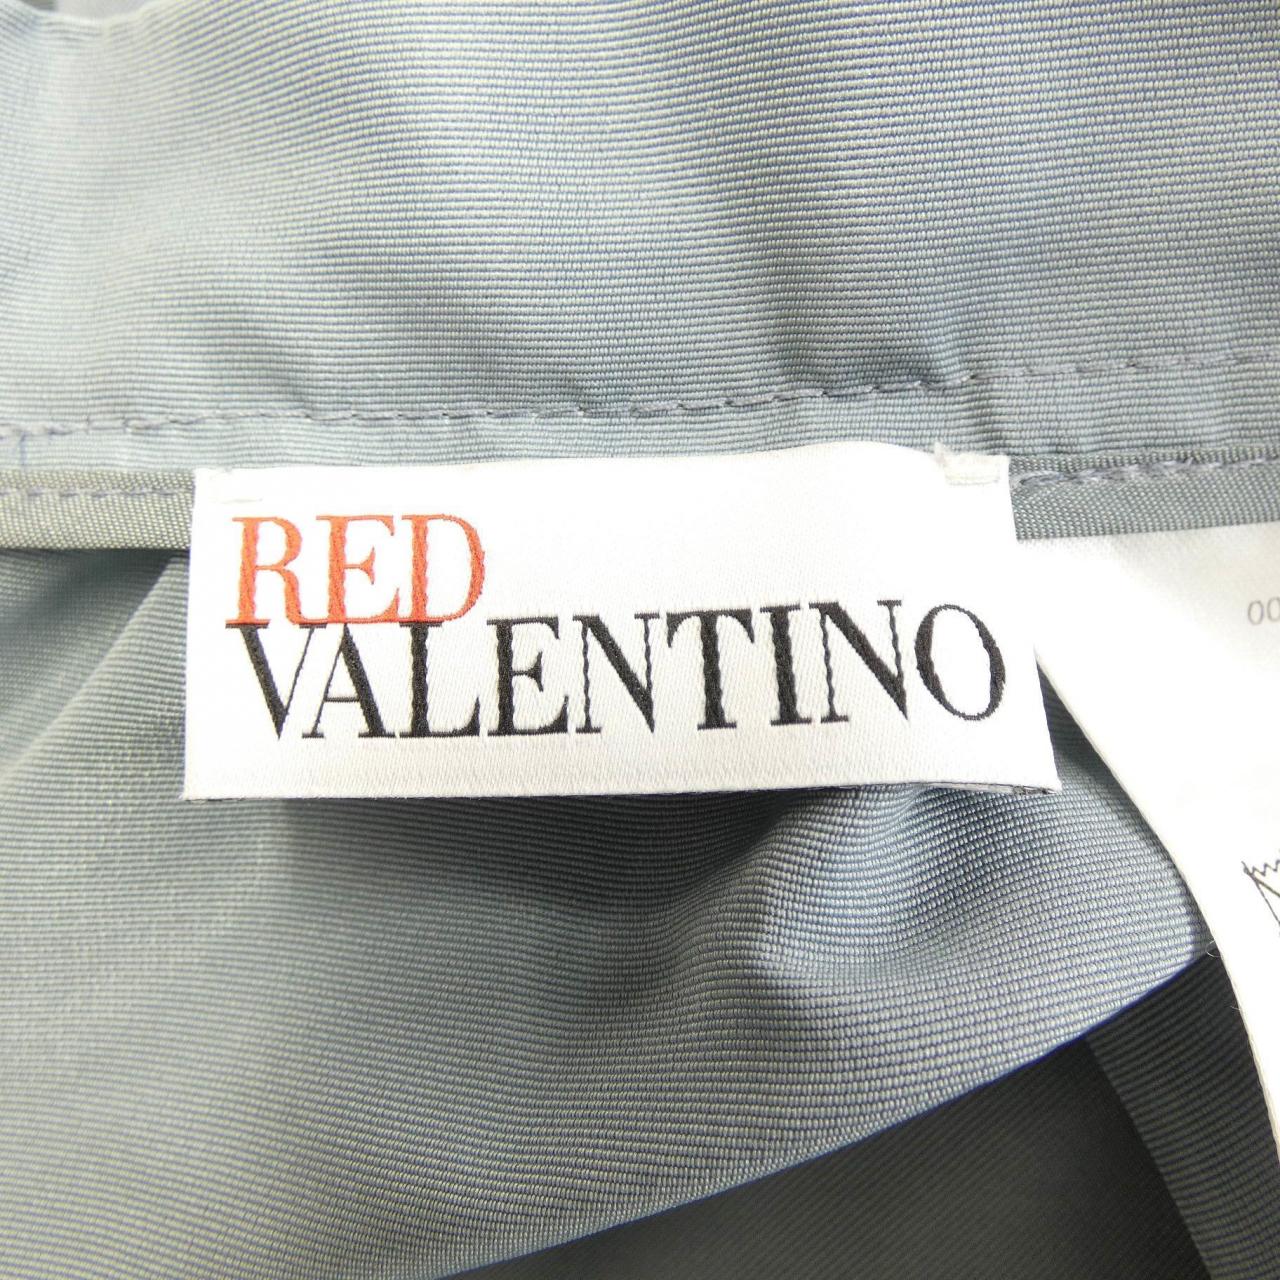 RED VALENTINO VALENTINO skirt